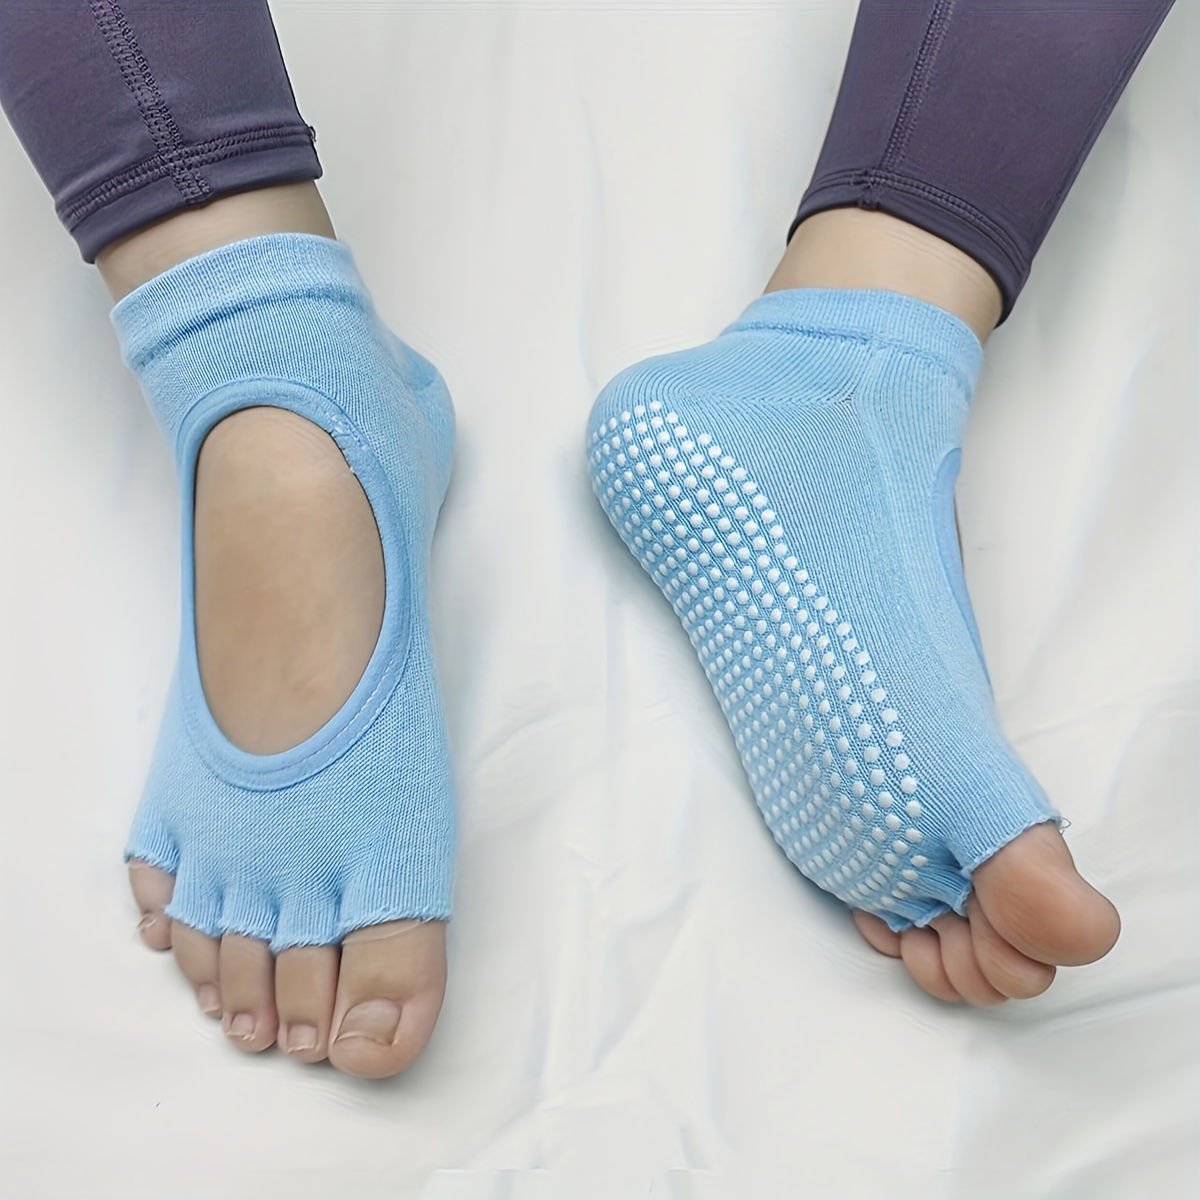 4 Pairs Toeless Yoga Socks Non-Slip Grips for Pilates Ballet Dance